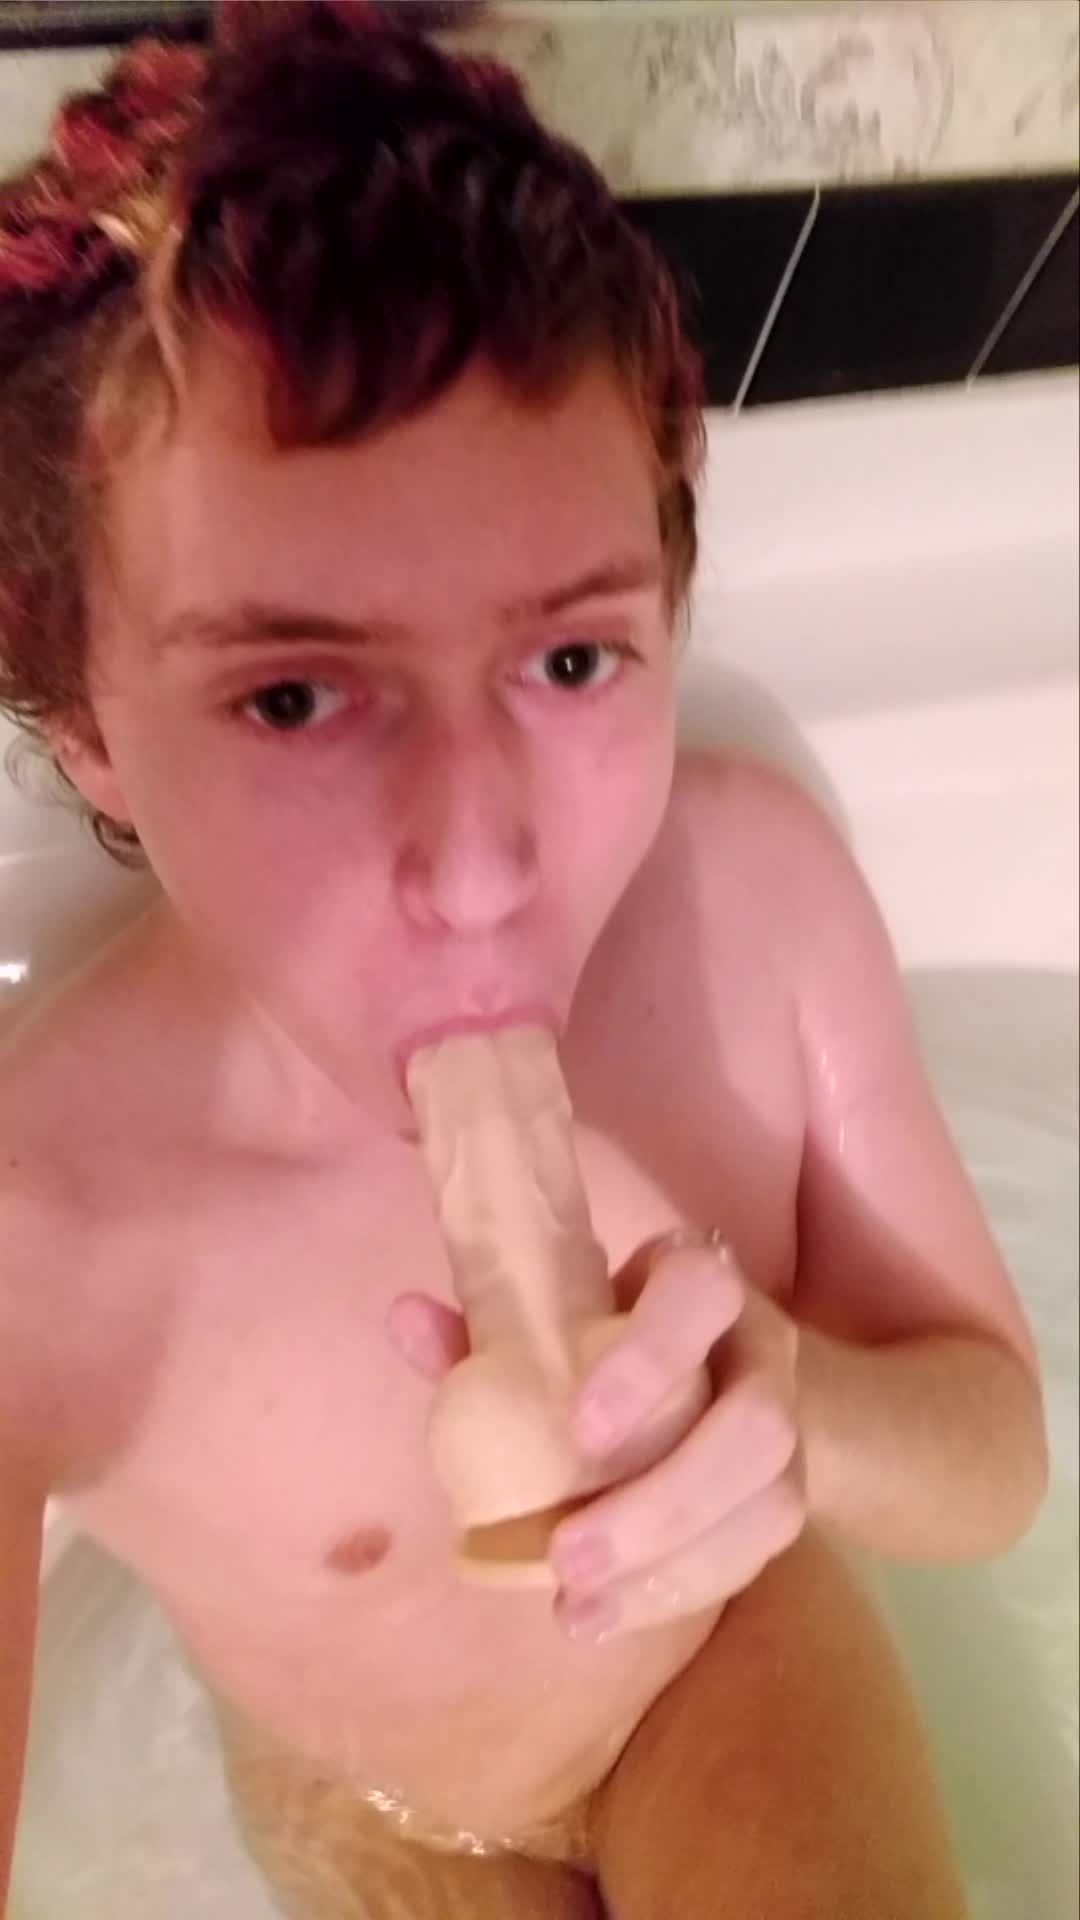 Bathtub blowjob practice